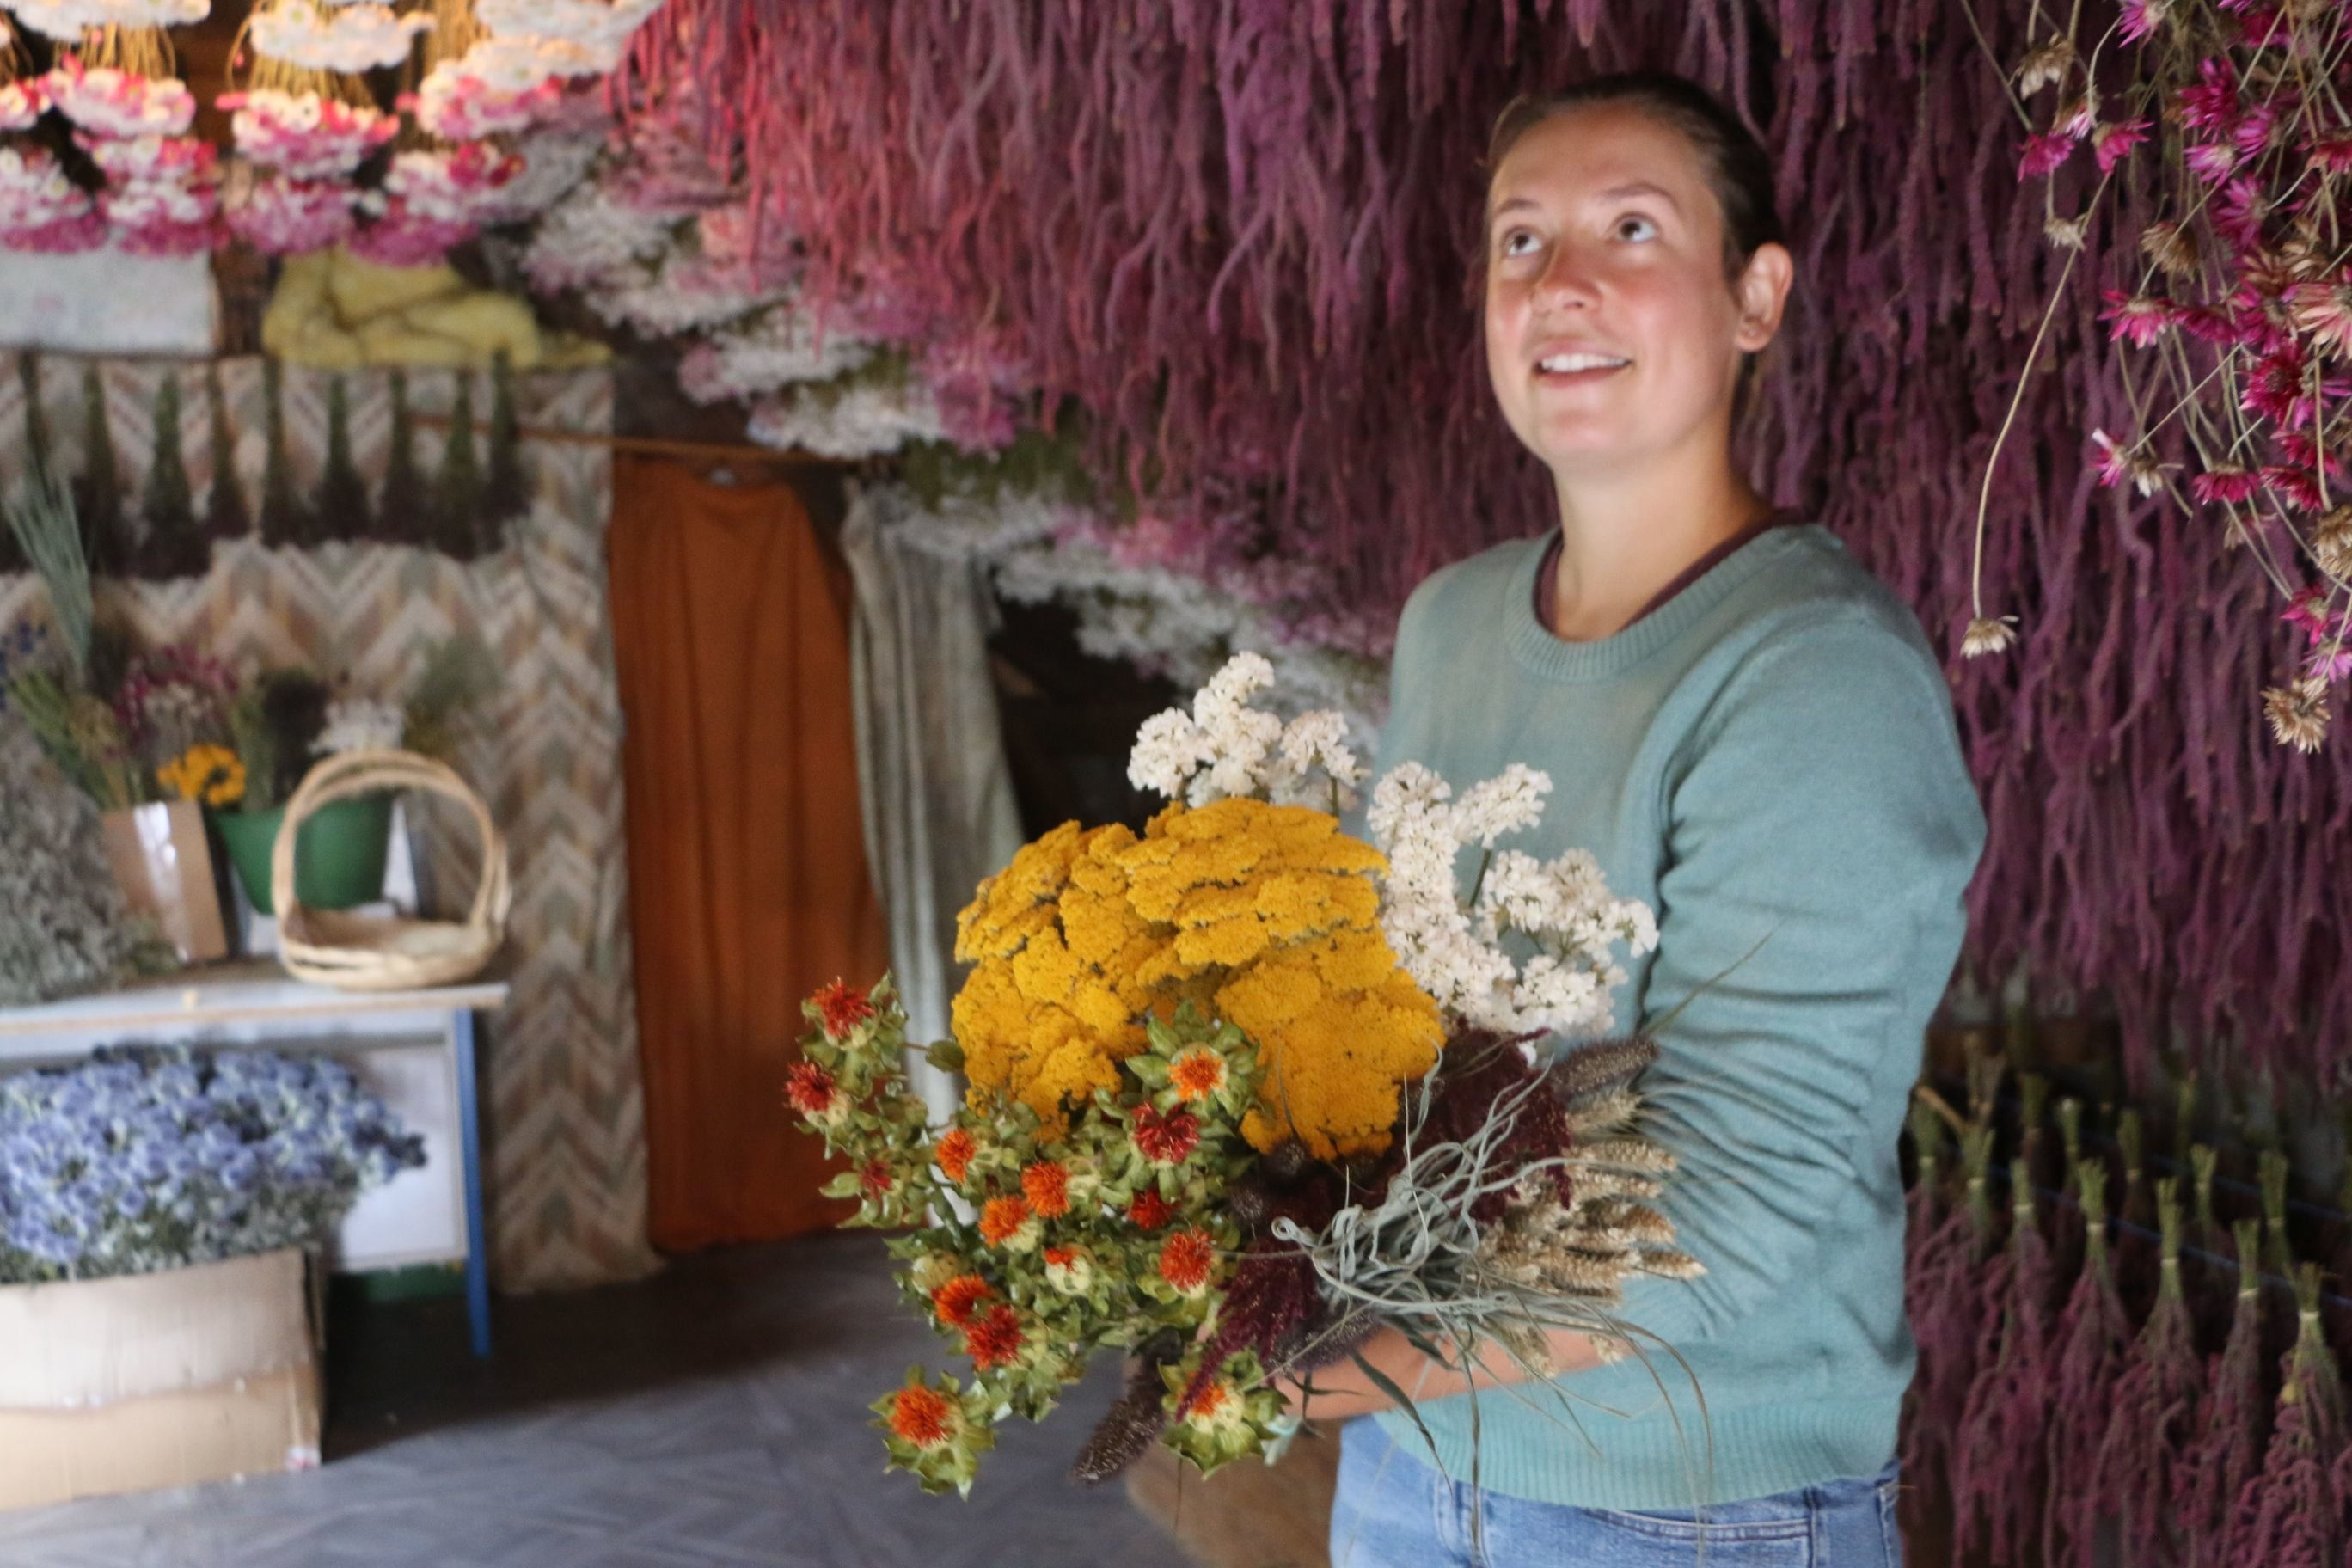 Autheuil-en-Valois (Oise), mercredi 1er septembre. Joséphine Mullet, 27 ans, cultive ses fleurs sur près de 2 000 m2 de terres et les fait ensuite sécher pour les assembler en bouquets. Une activité qu'elle tient de son père, producteur en Corrèze. LP/Juliette Duclos